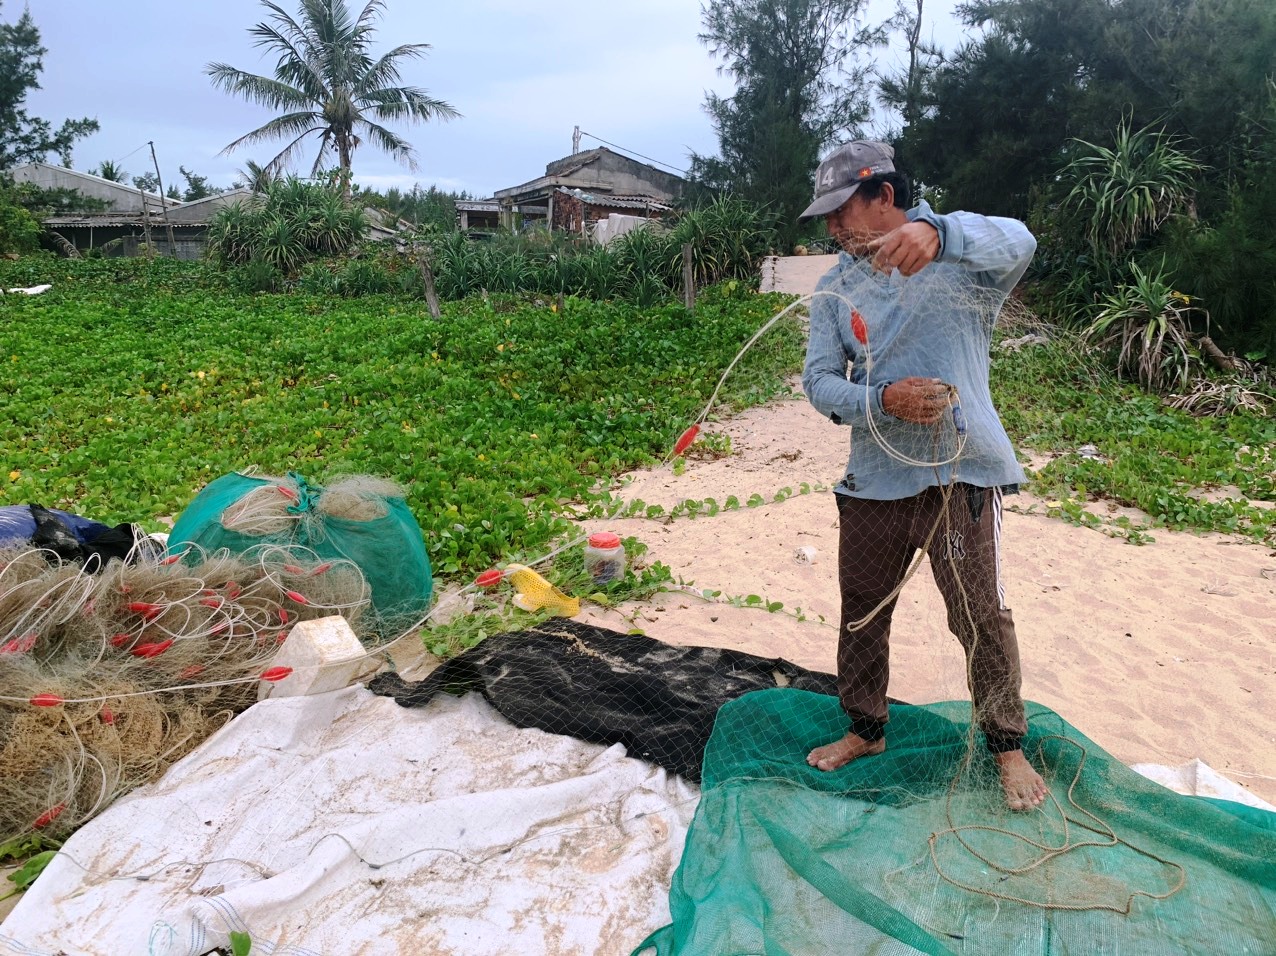 Ông Đỗ Thành Long (48 tuổi) ở thôn Lệ Thủy, xã Bình Trị, một ngư dân khai thác hải sản trên vịnh Việt Thanh lo lắng khi hay tin Nhà máy bột giấy VNT-19 đặt ống xả thải ra vịnh. Ảnh: Ngọc Viên